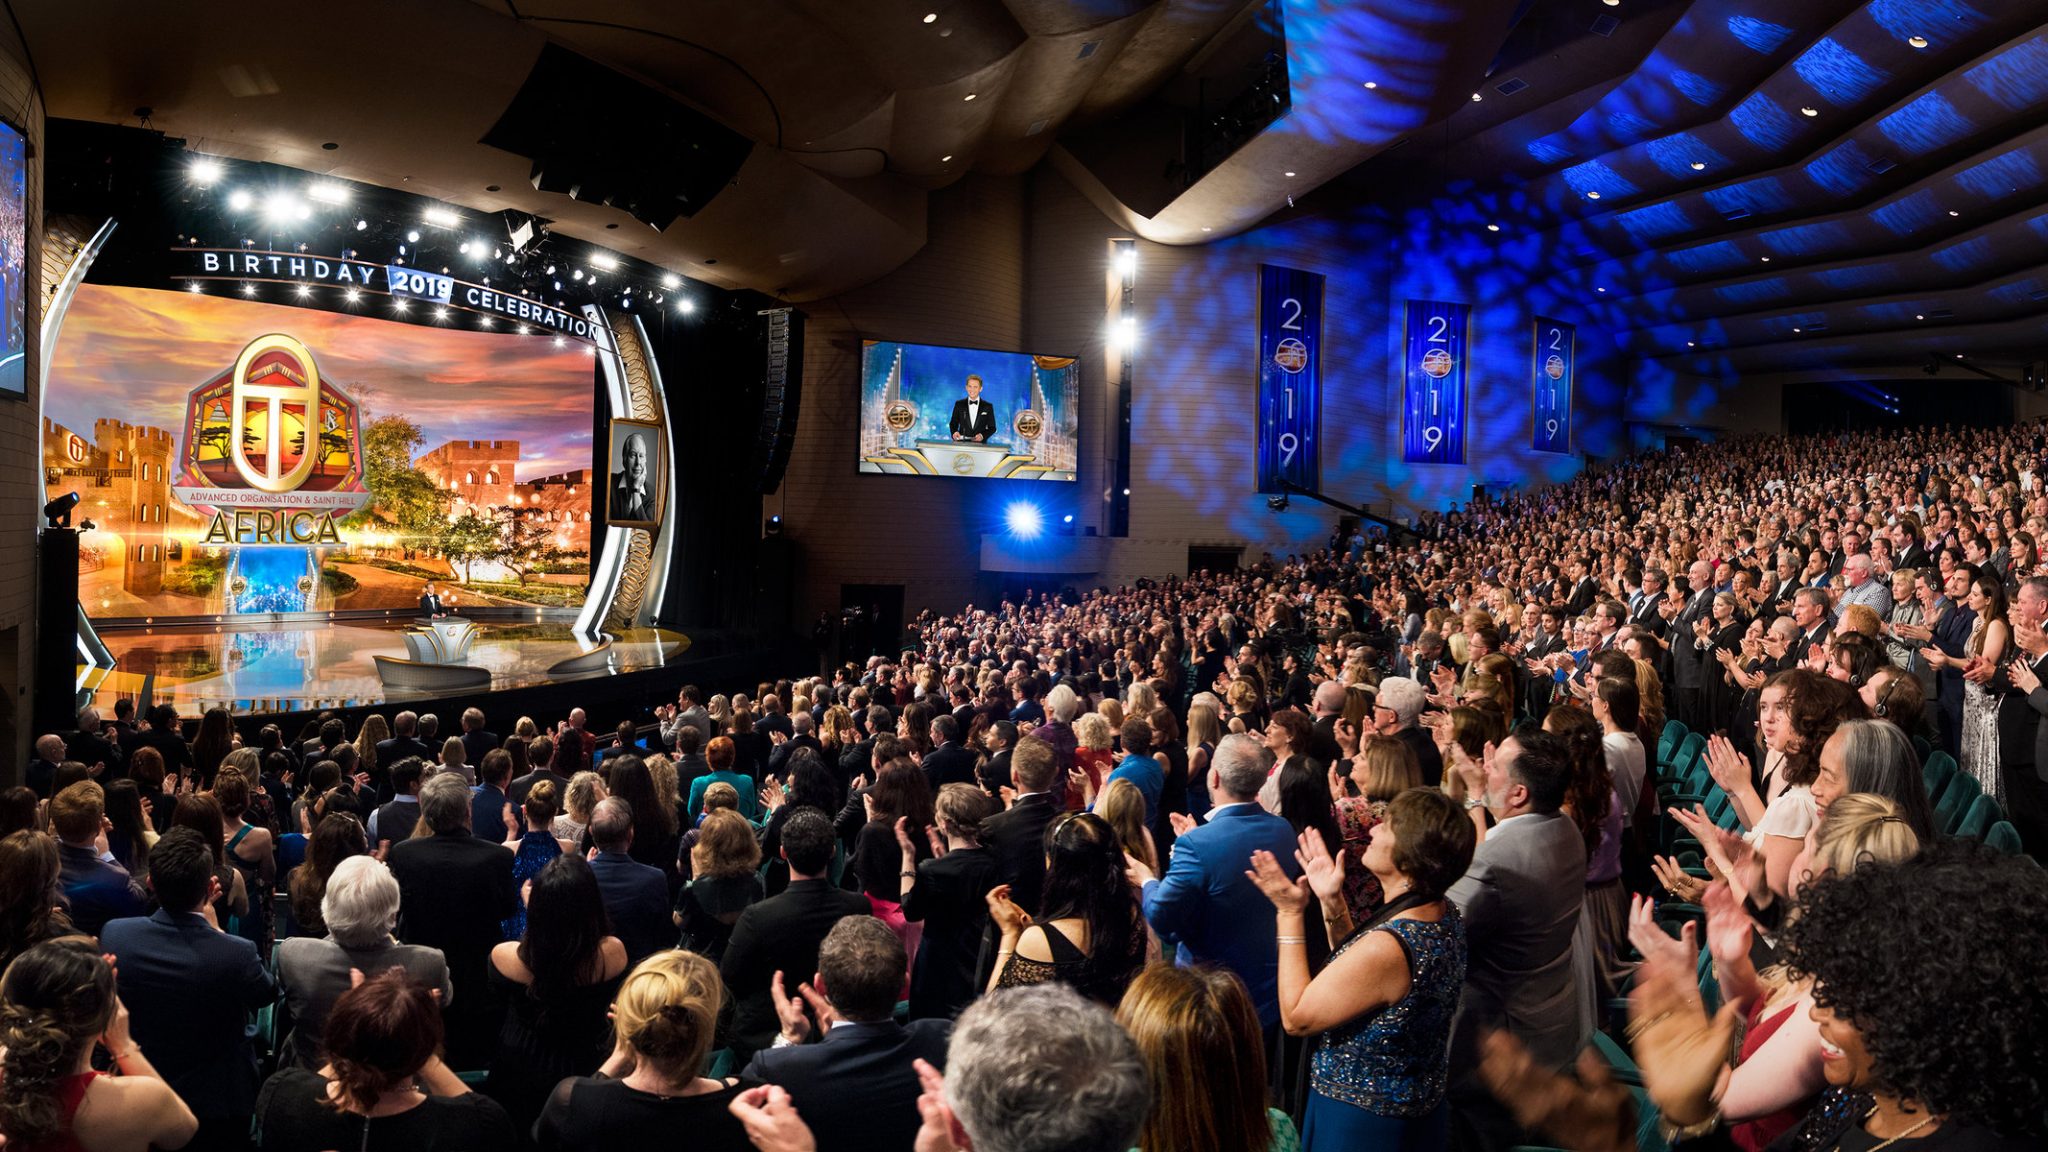 Une fête d’anniversaire mémorable : des scientologues de 70 nations se réunissent pour honorer le fondateur L. Ron Hubbard